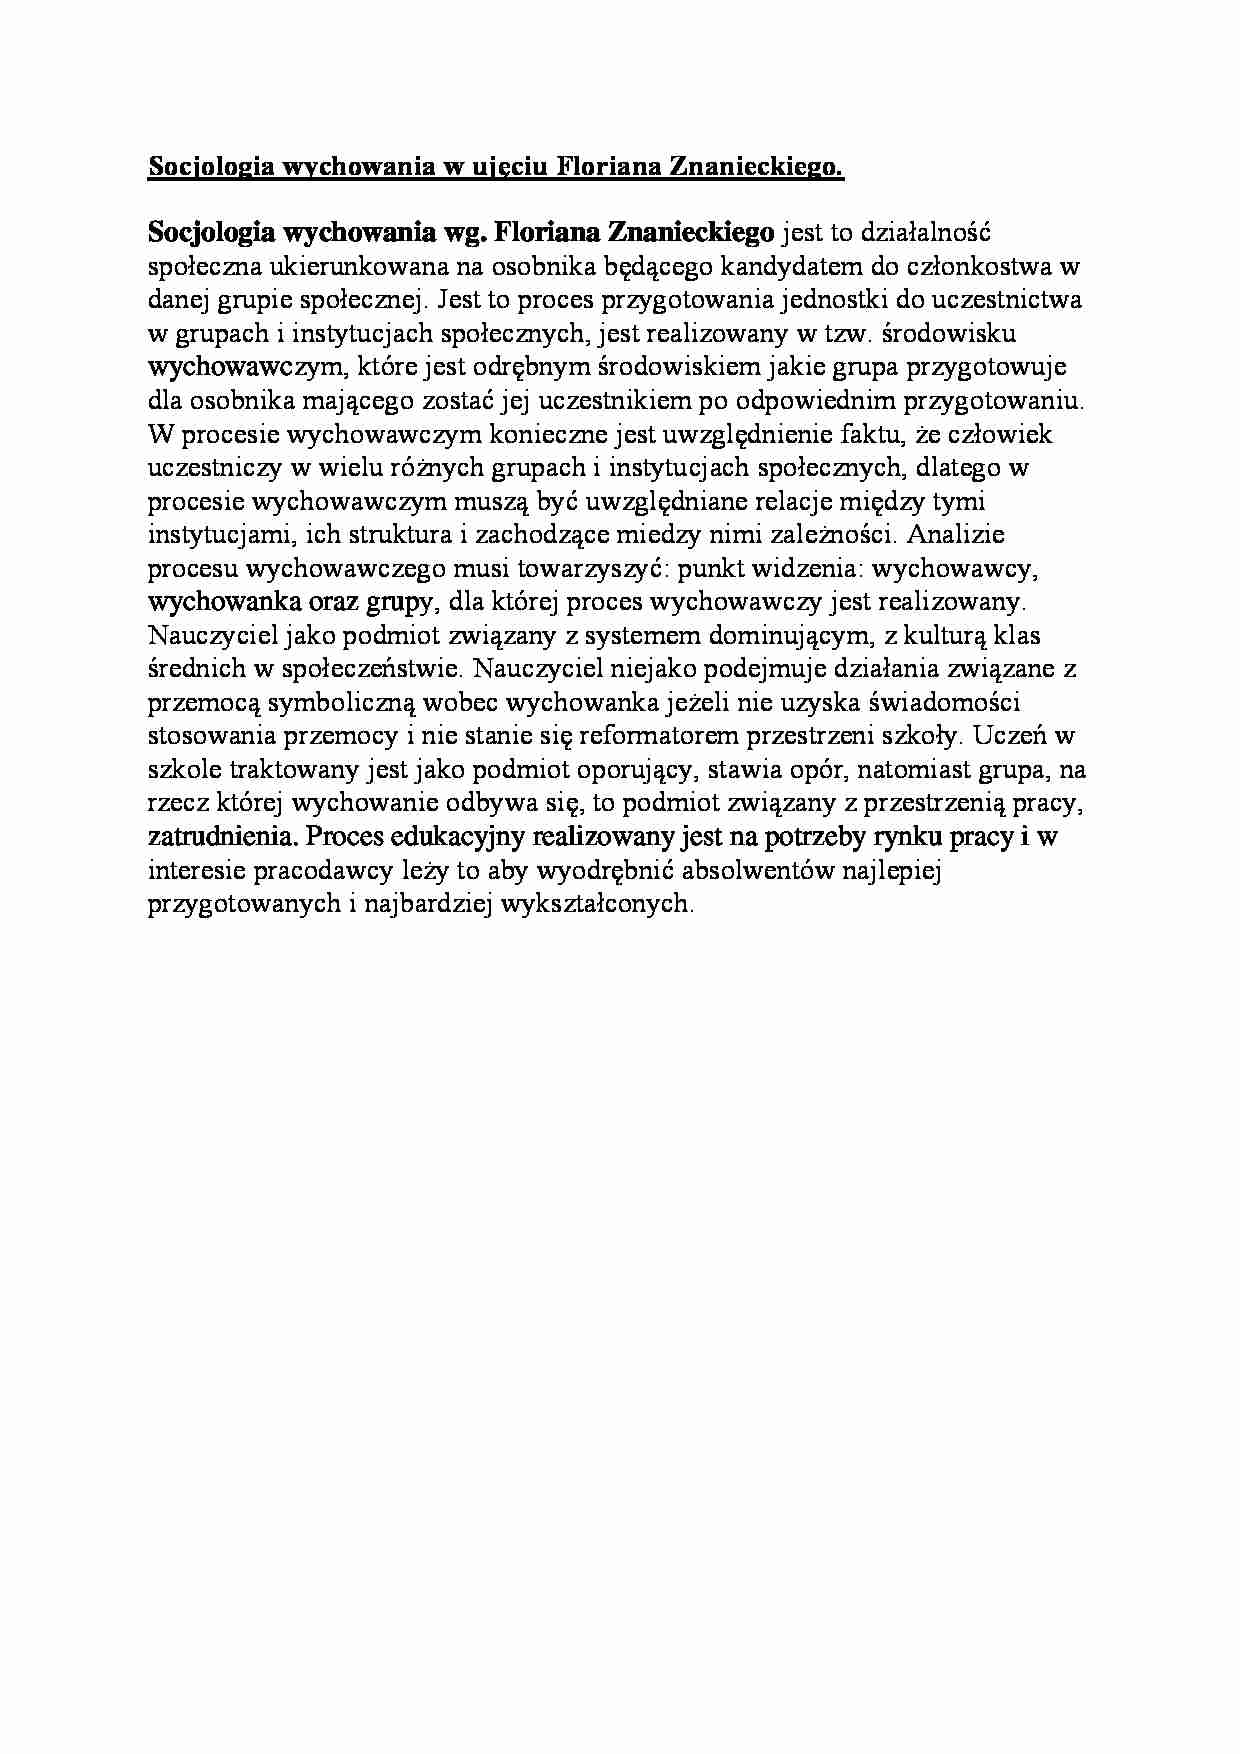 Socjologia wychowania w ujęciu Floriana Znanieckiego-opracowanie - strona 1